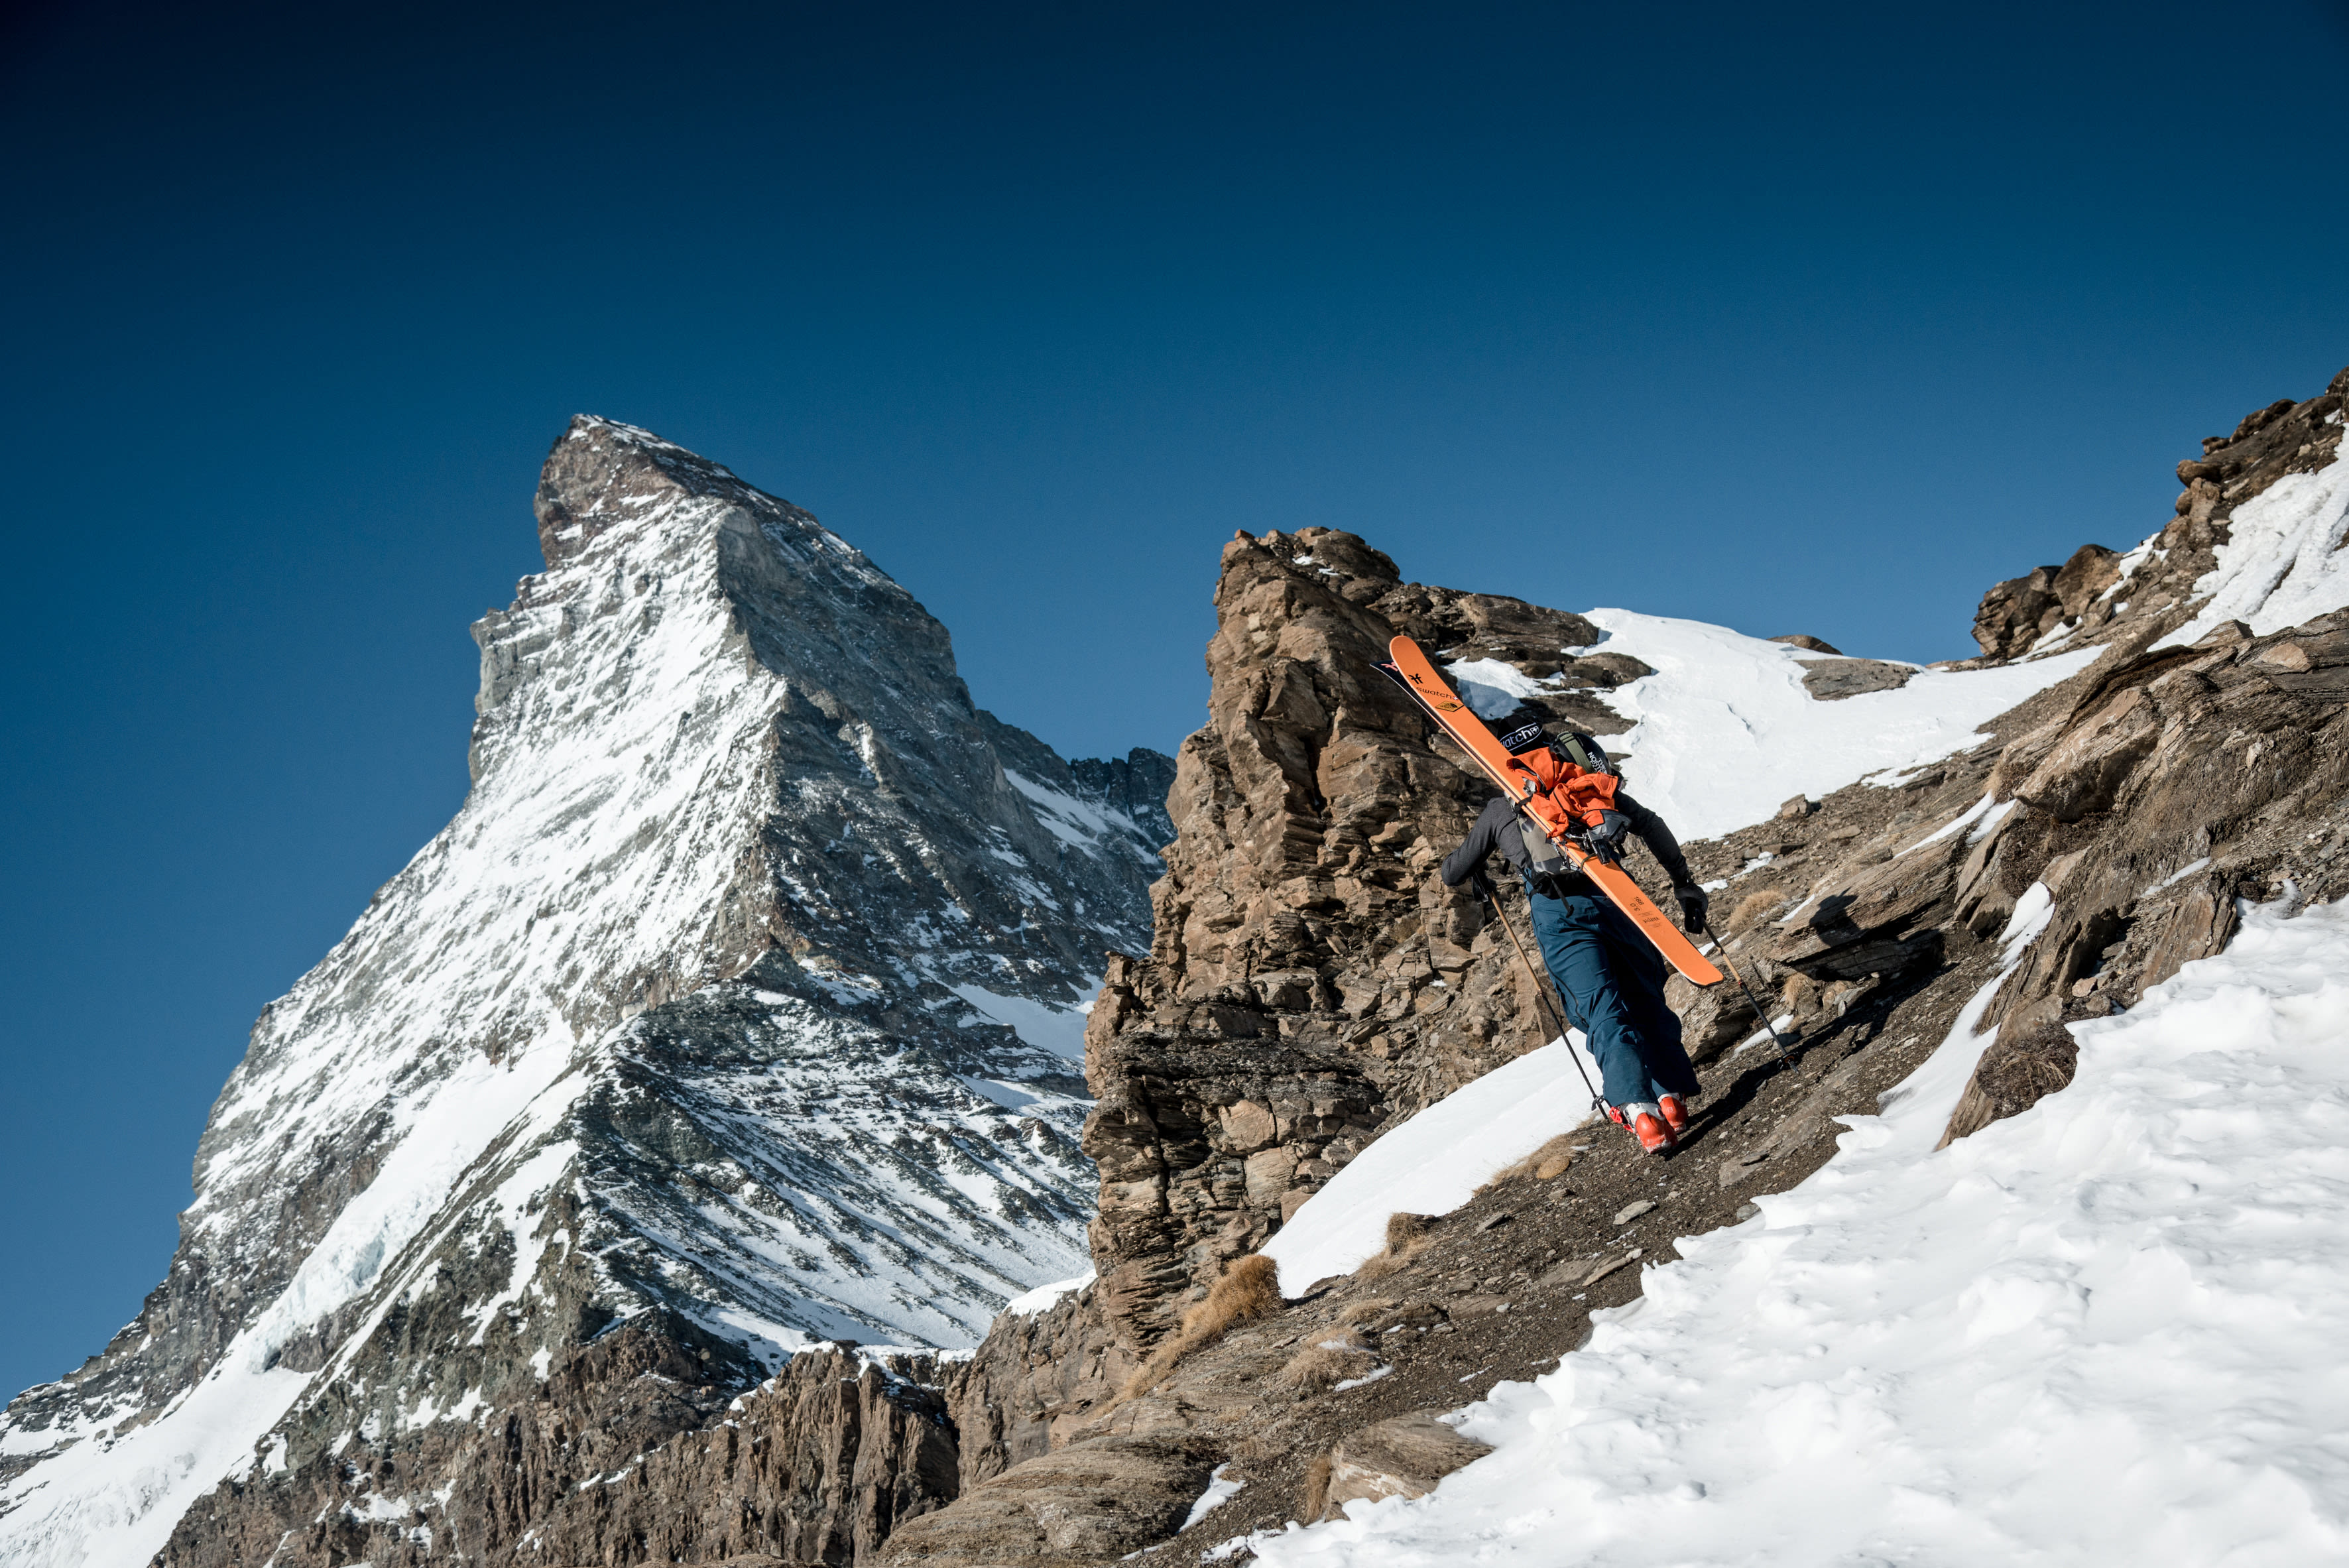 Samuel Anthamatten, Matterhorn. Valais, Switzerland